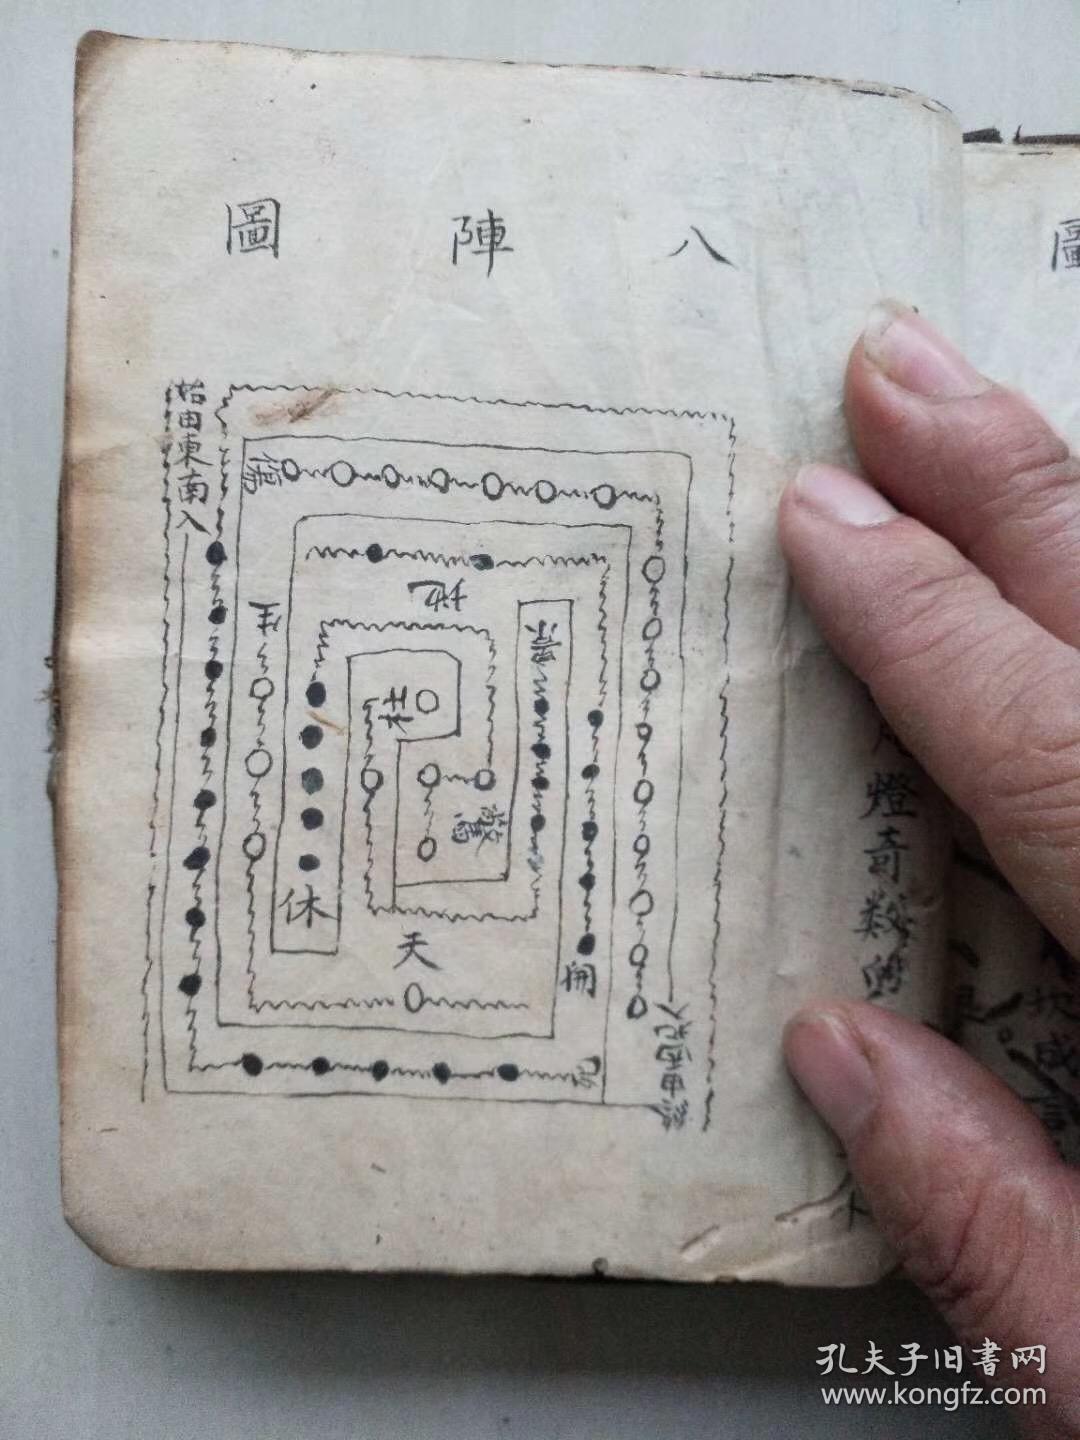 清代道教阴府丧葬文书格式 河图洛书图注 八阵图 各种